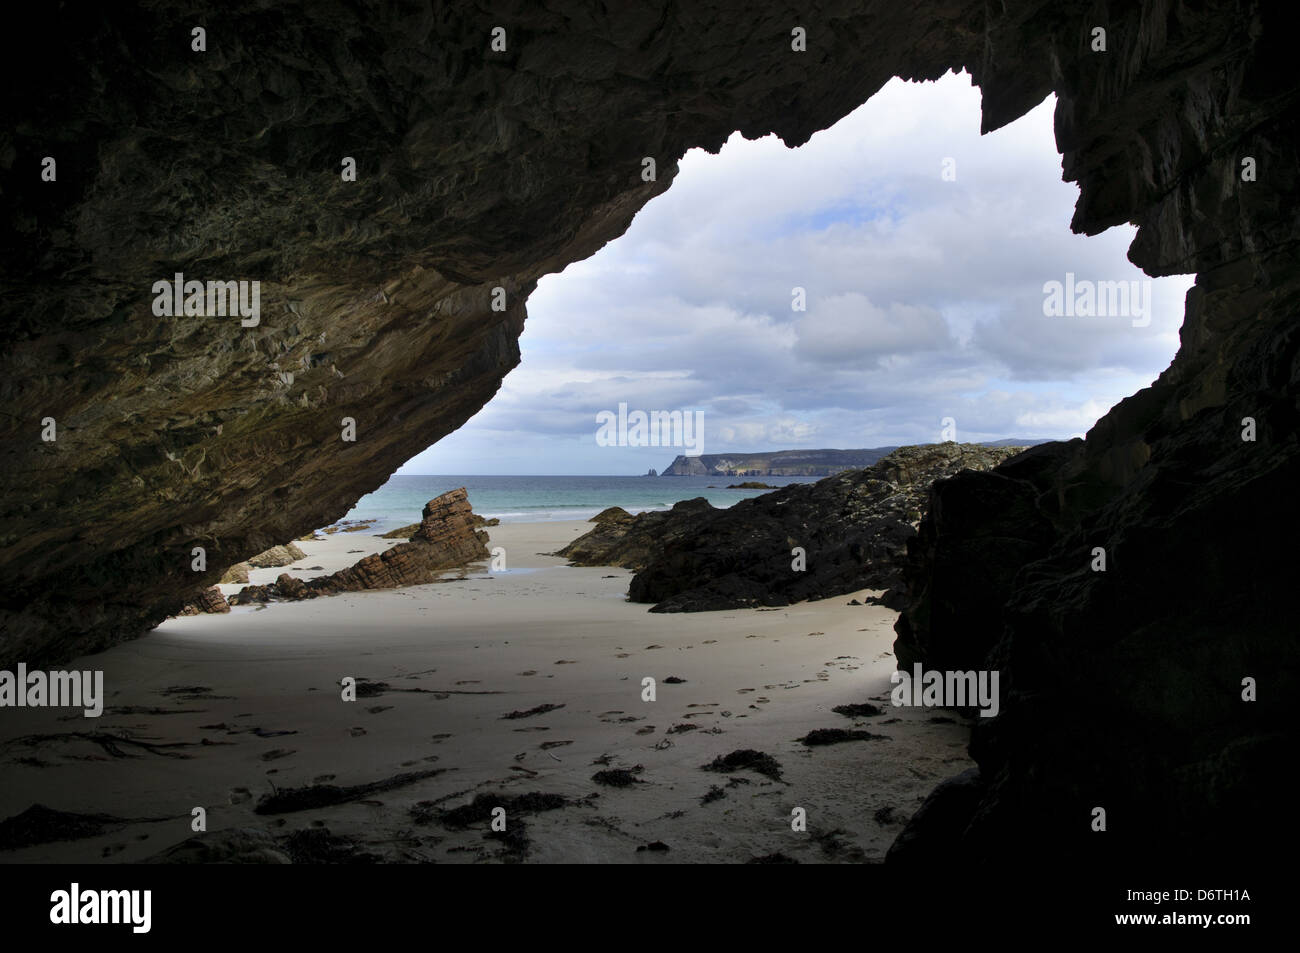 Vue sur la plage depuis l'intérieur de cavernes rocheuses, bouche, Ceannabeinne Chailgeag Traigh Allt, Sutherland, Highlands, Scotland, Août Banque D'Images